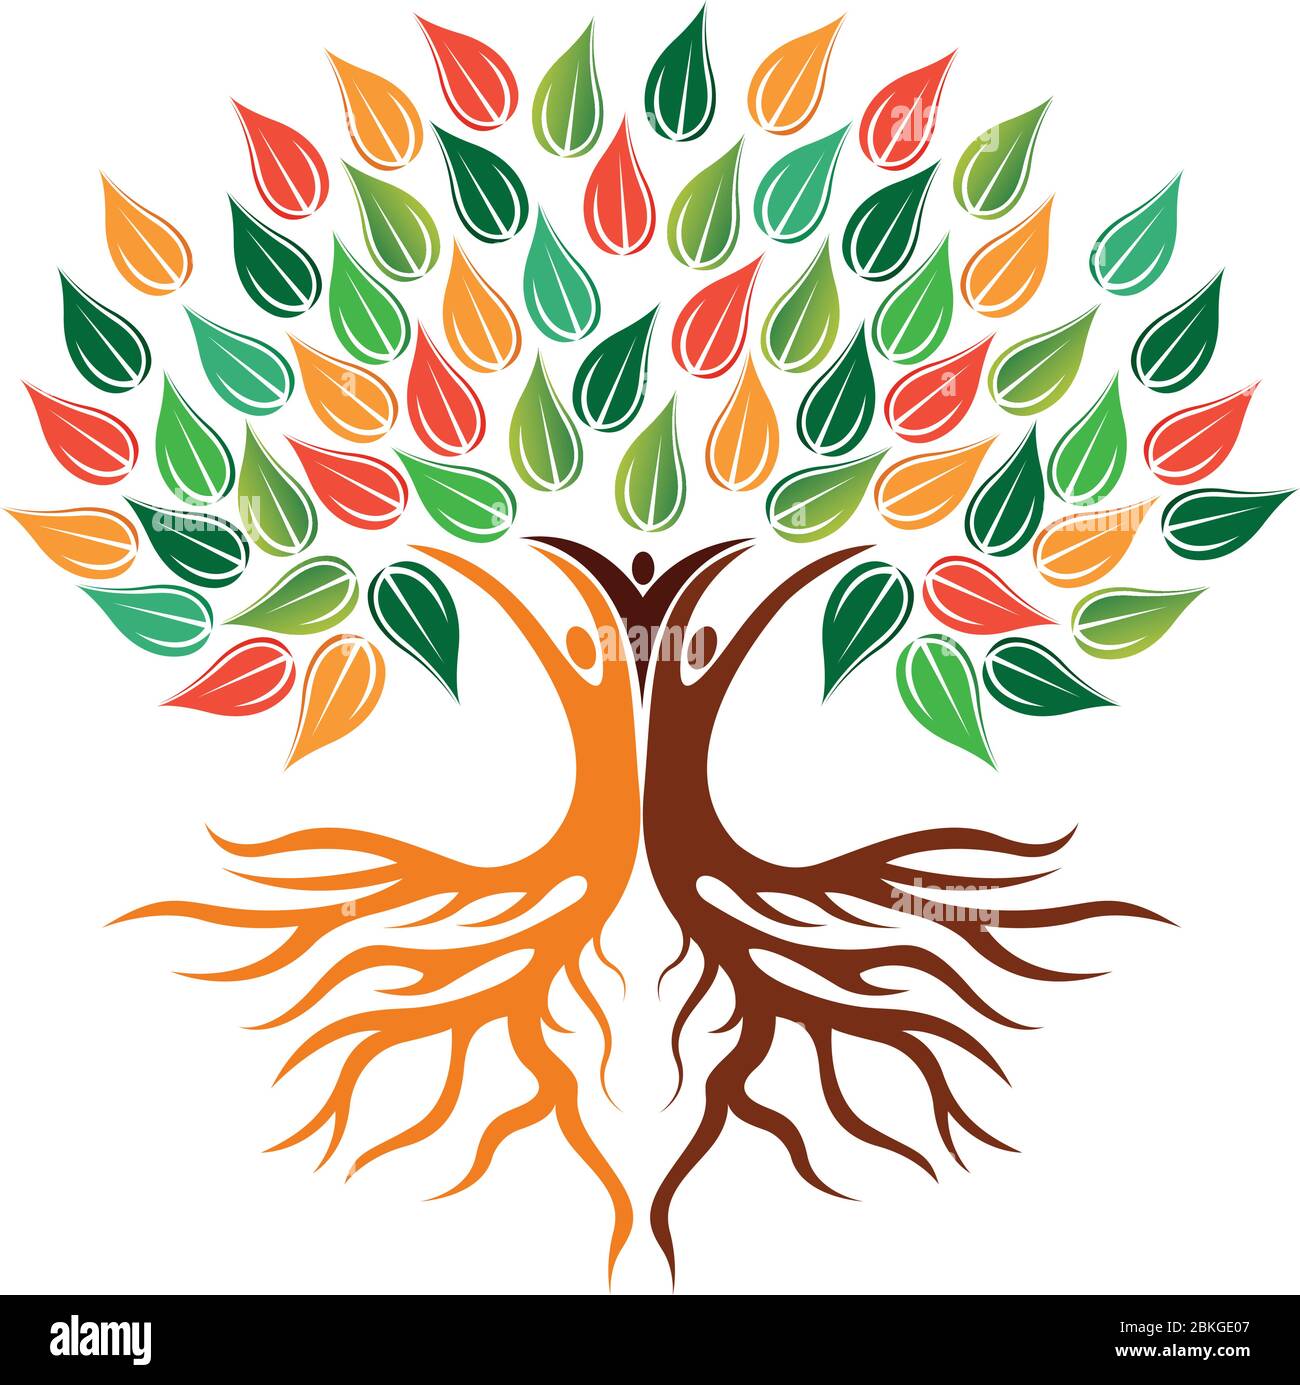 family tree logo Stock Vector Image & Art - Alamy